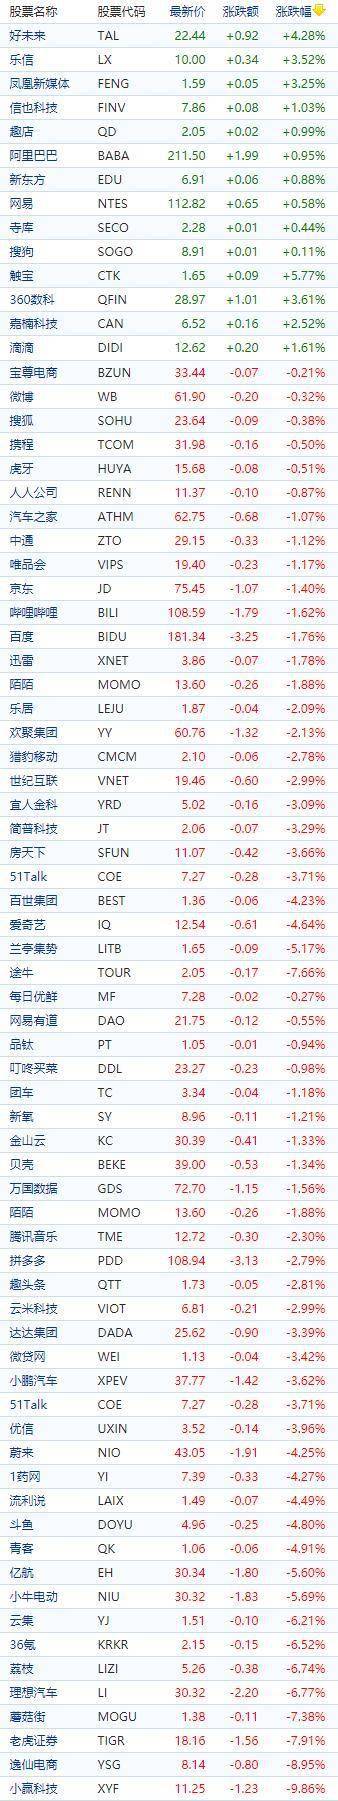 中国概念股周三收盘多数下跌 反观苹果涨逾2%再次刷新纪录